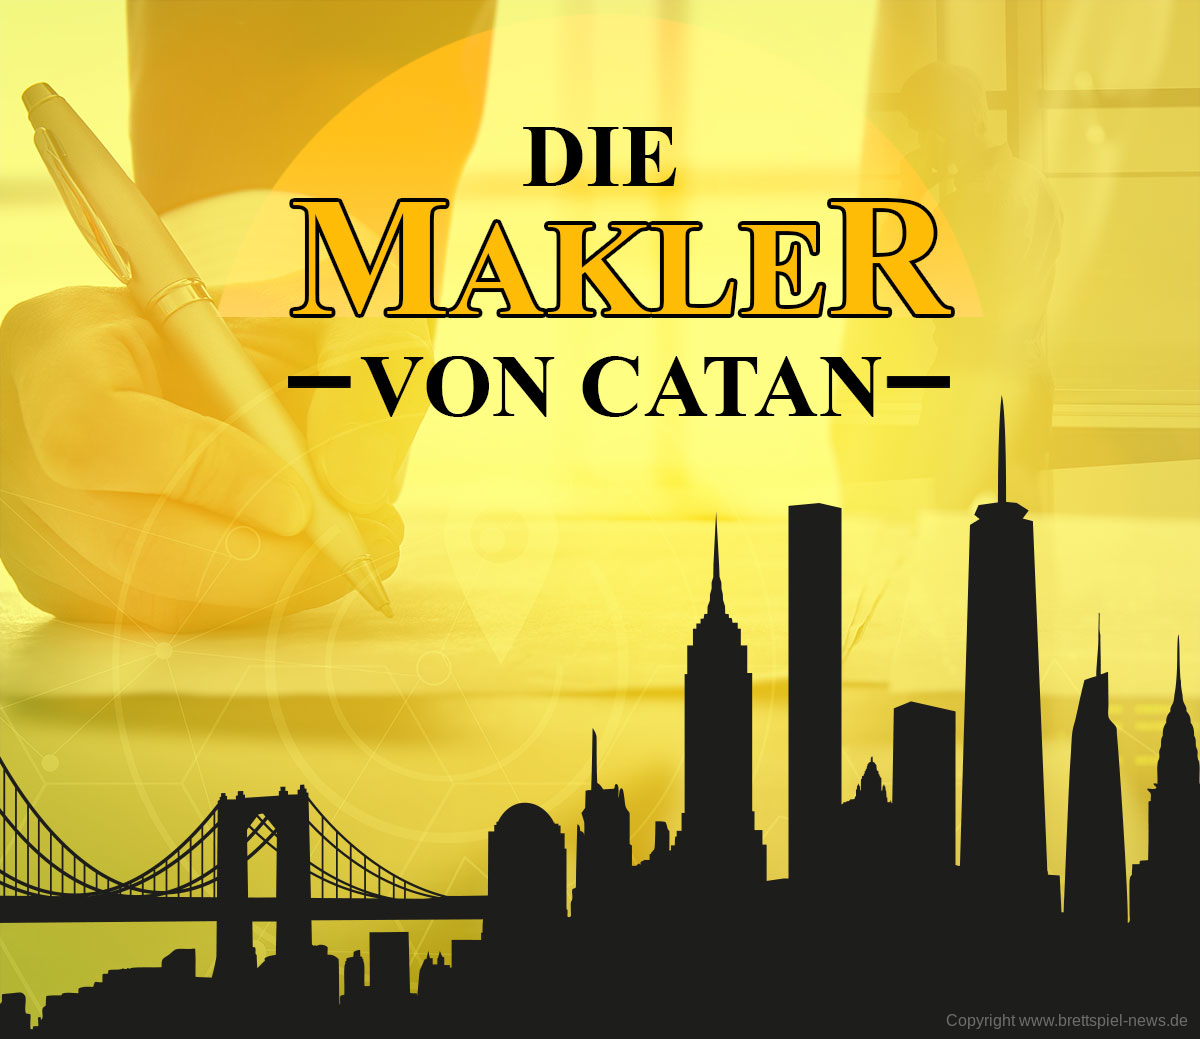 DIE SIEDLER VON CATAN // Neustart! „Die Makler von Catan“ kommt 2019!